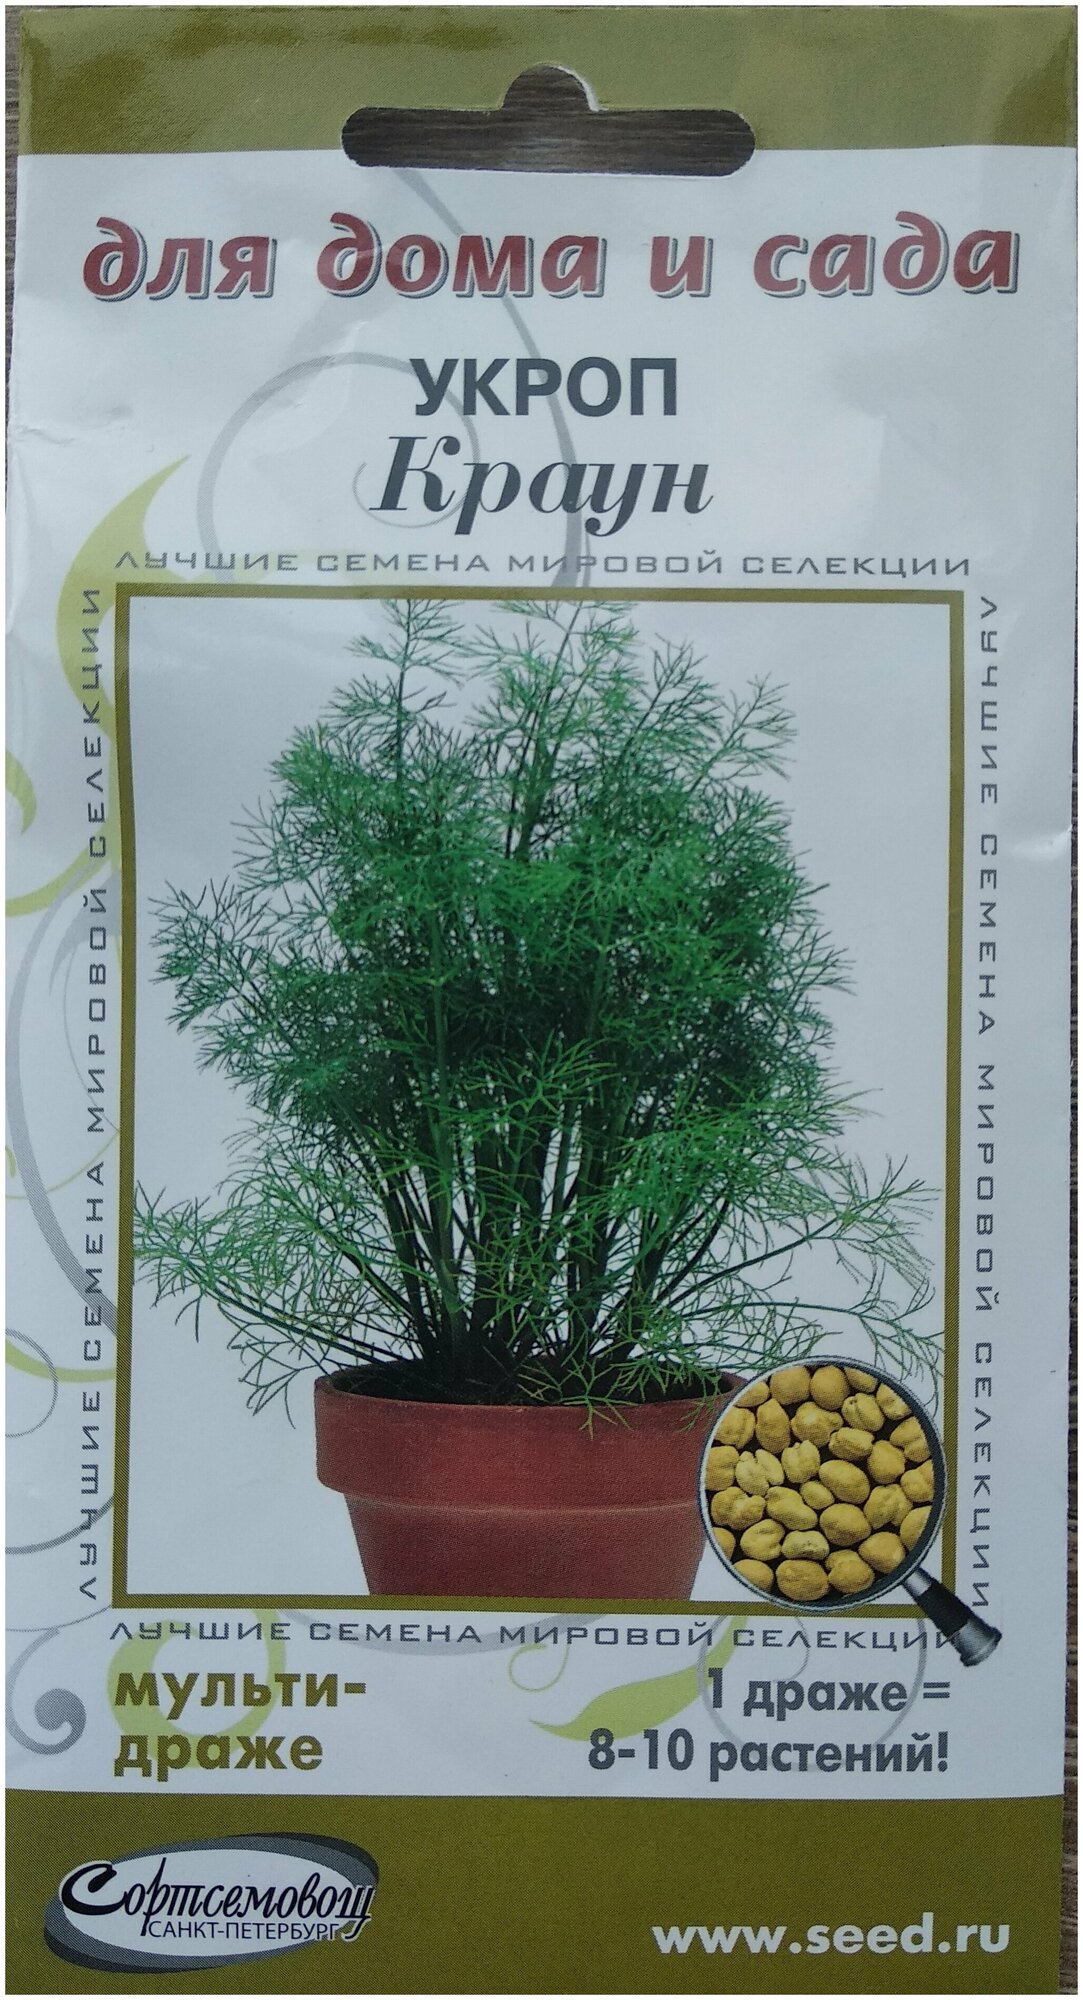 Укроп Краун (1 мультидраже - 8-10 растений) огород на подоконнике витамины круглый год 4 драже